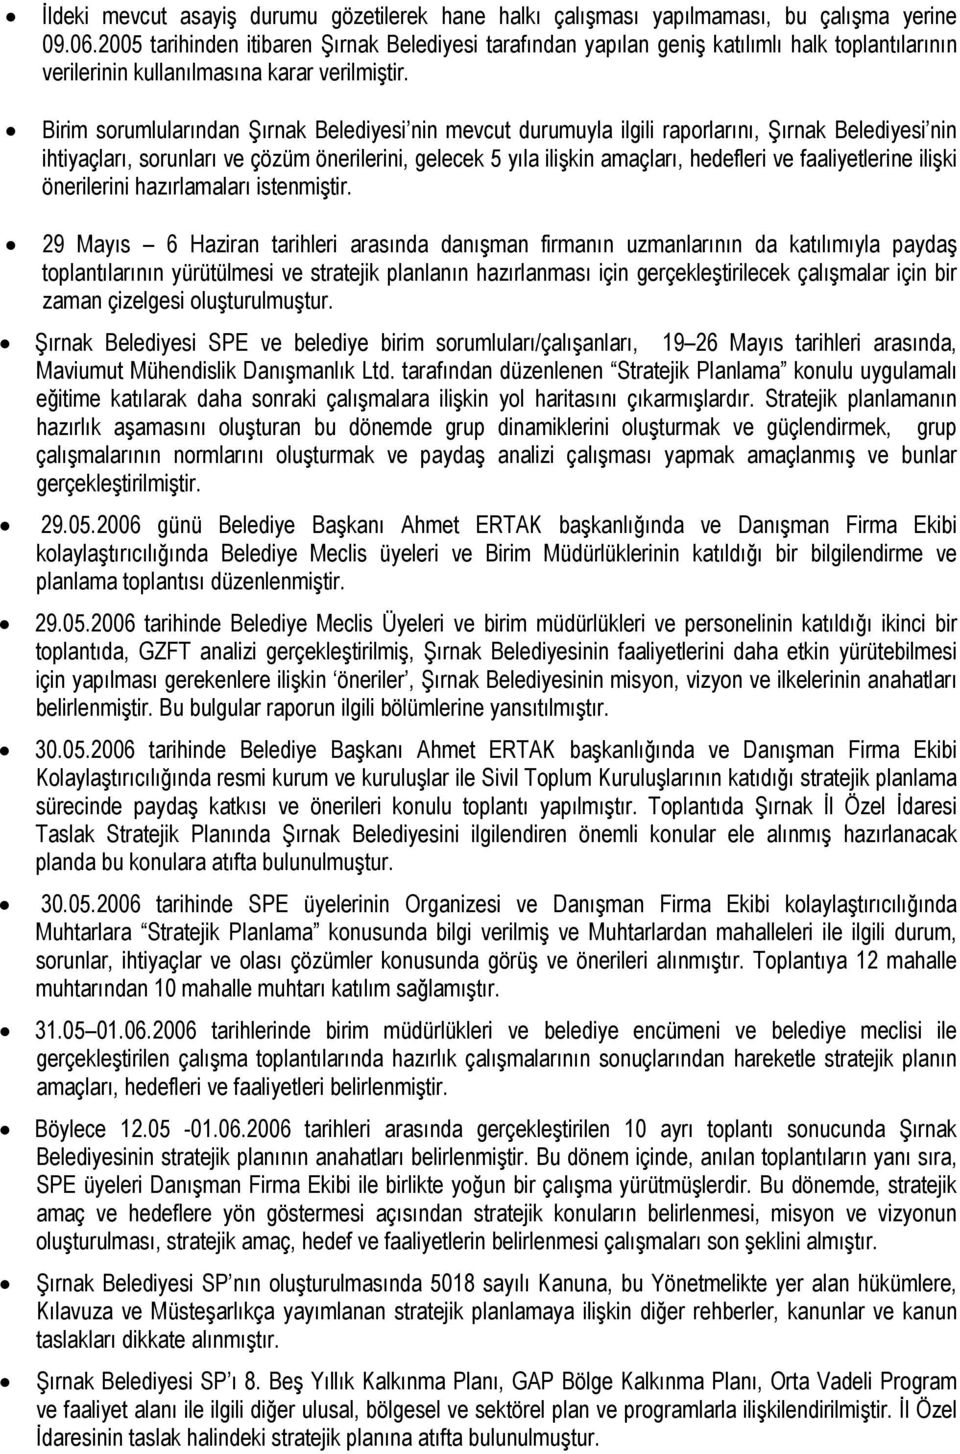 Birim sorumlularından Şırnak Belediyesi nin mevcut durumuyla ilgili raporlarını, Şırnak Belediyesi nin ihtiyaçları, sorunları ve çözüm önerilerini, gelecek 5 yıla ilişkin amaçları, hedefleri ve